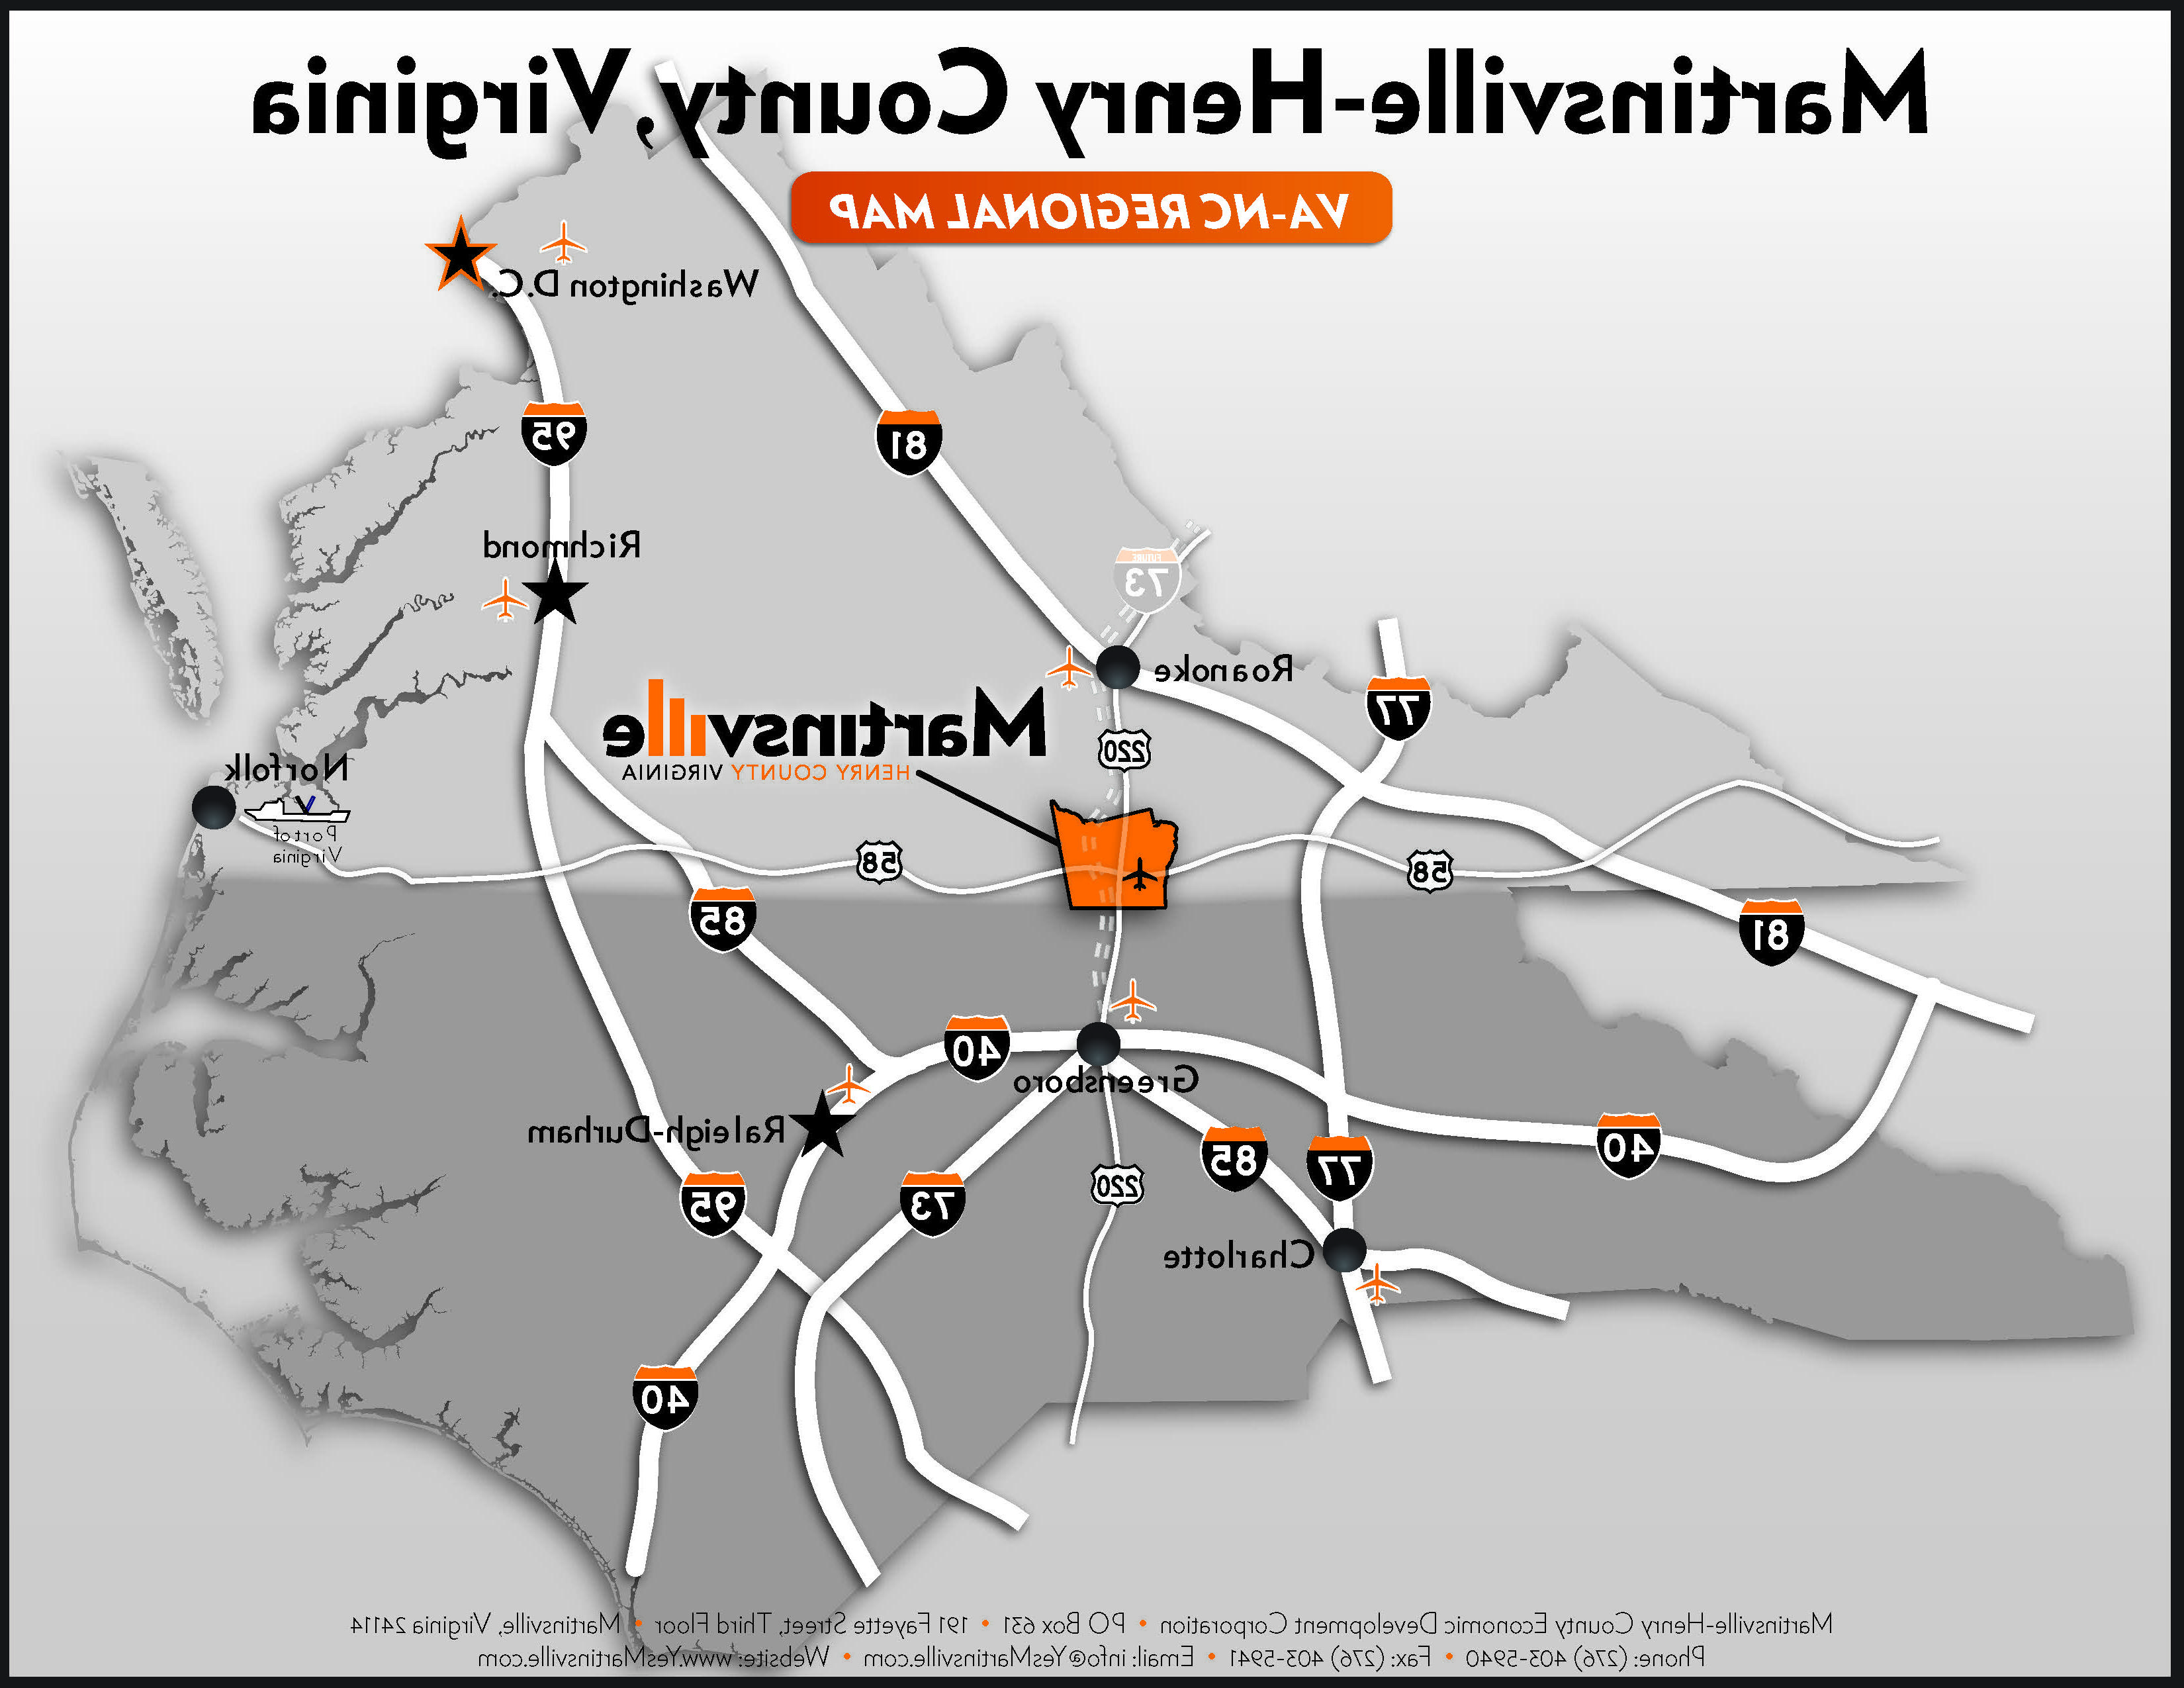 VA-NC Map